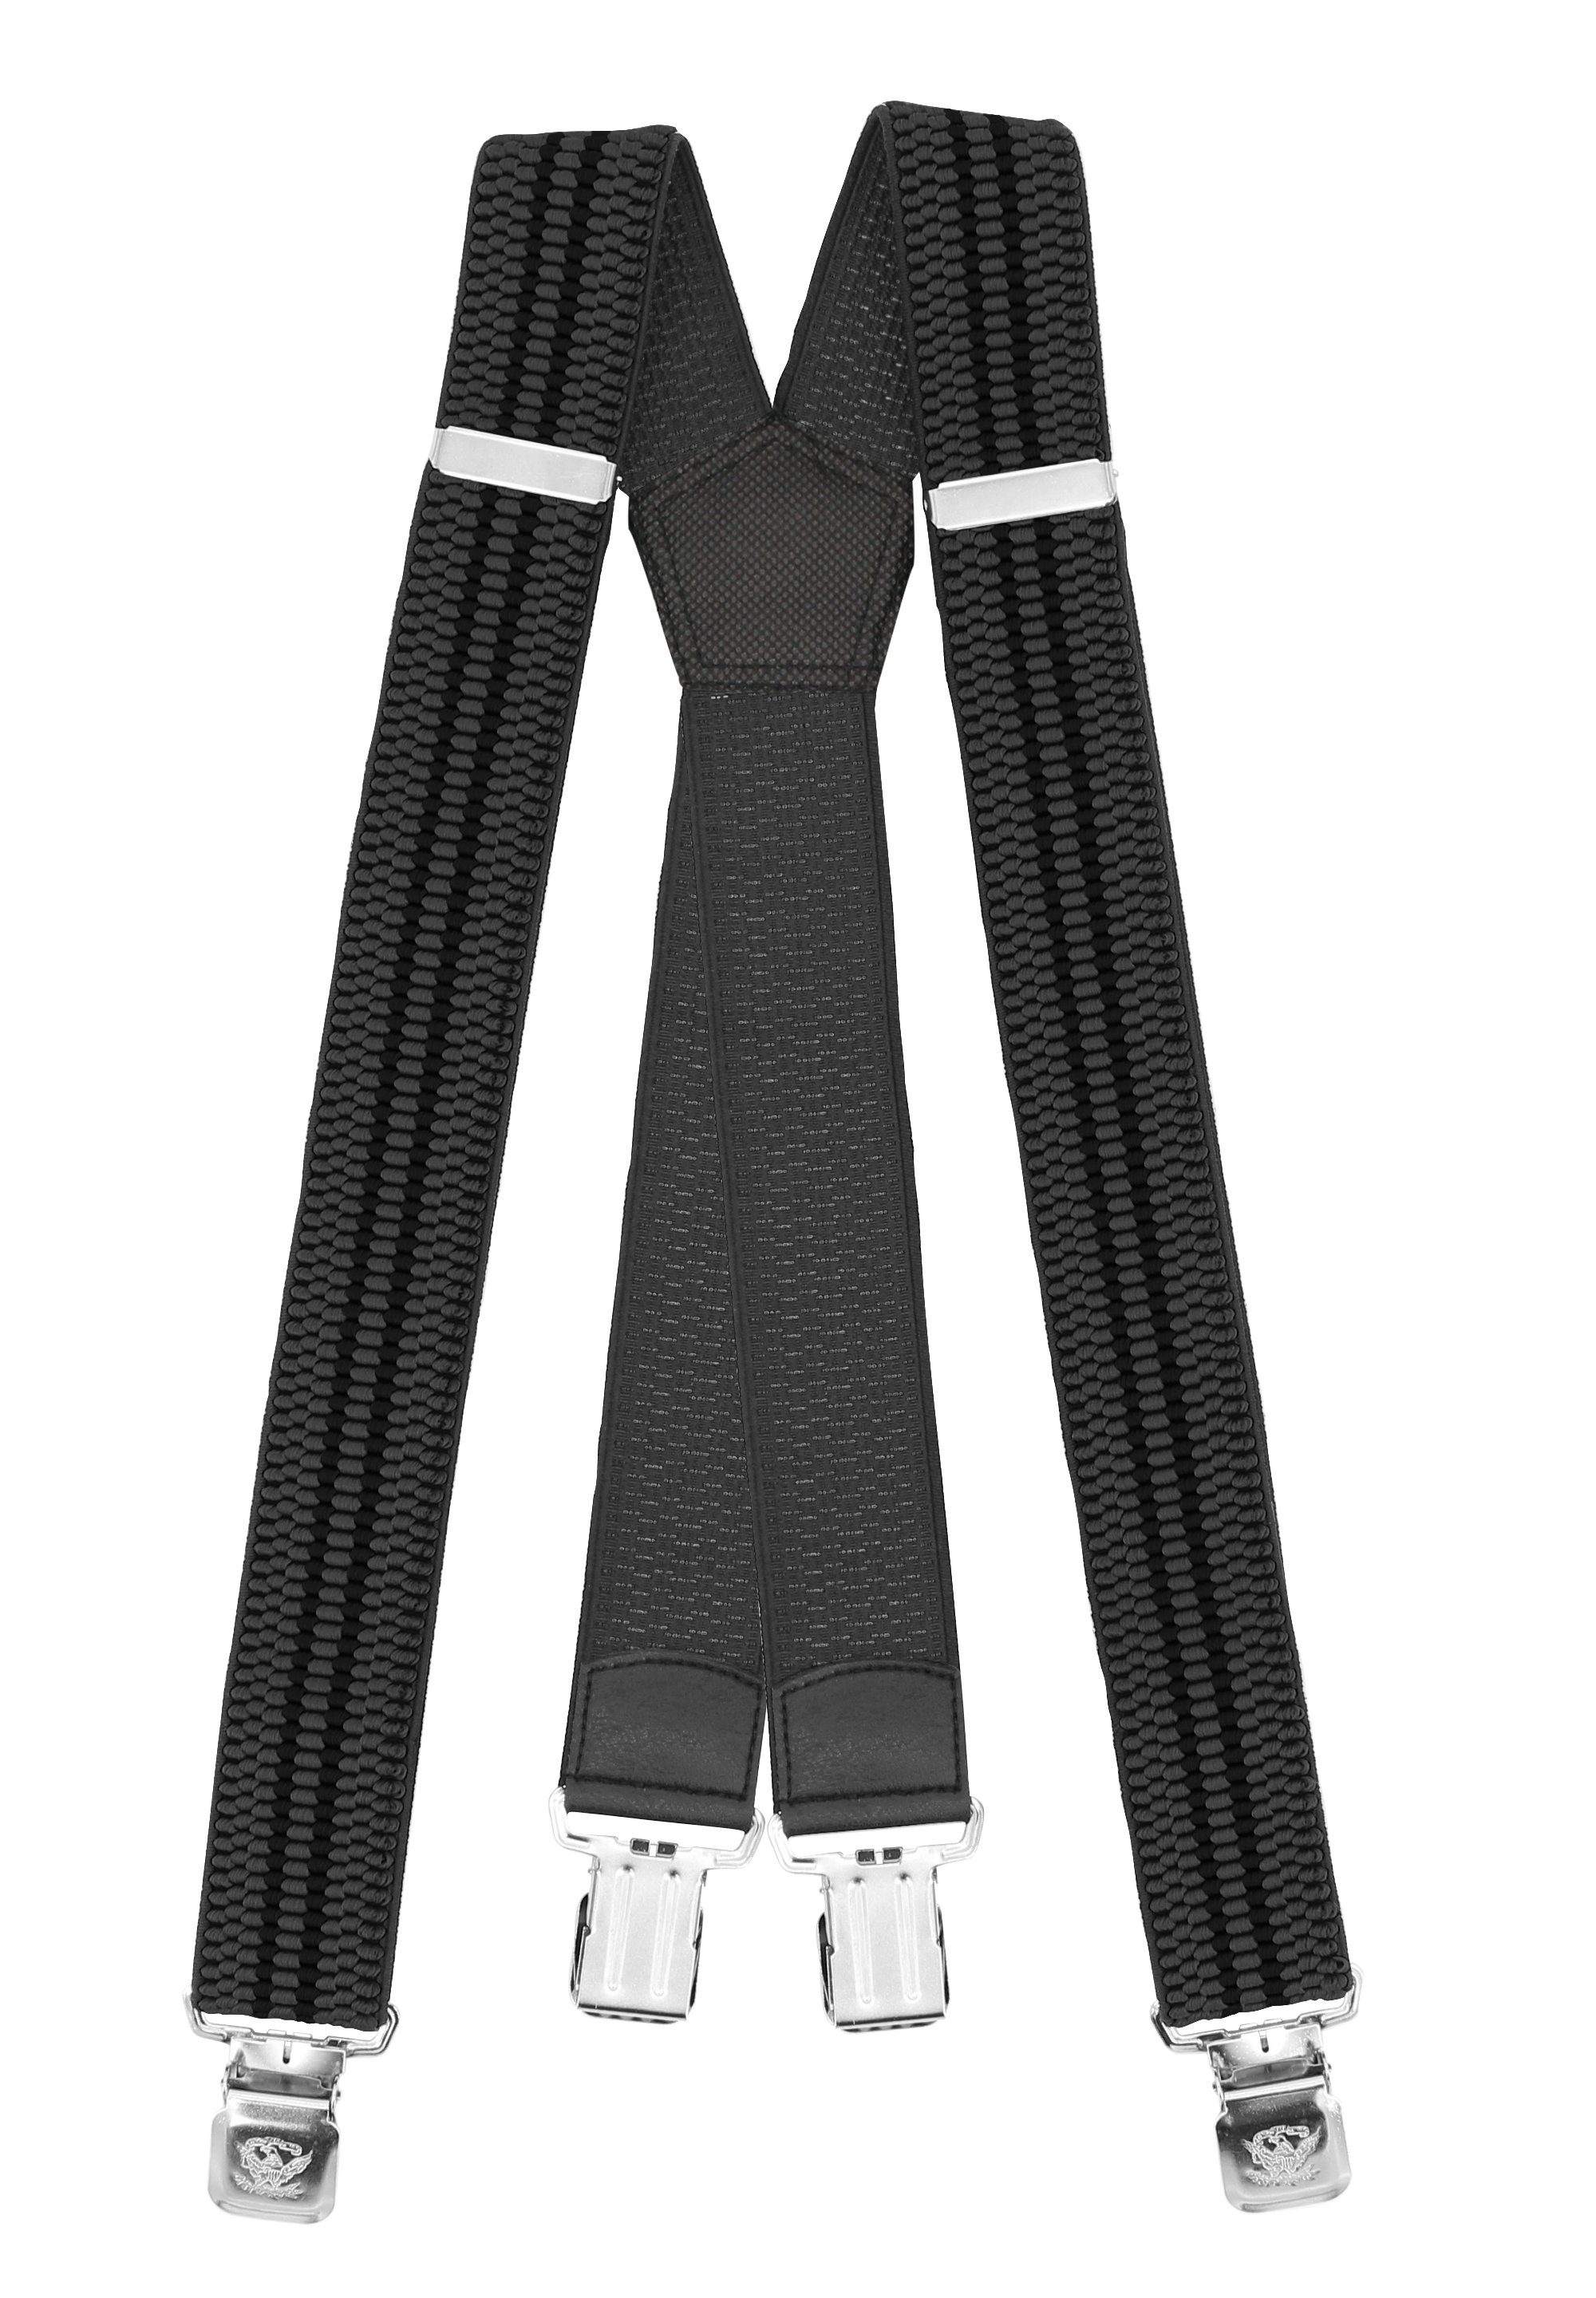 Fabio Farini Hosenträger 4cm Breites X-Design verstellbar mit extra starken Clipverschluss, Grau (schwarze Streifen) Grau mit schwarzen Streifen